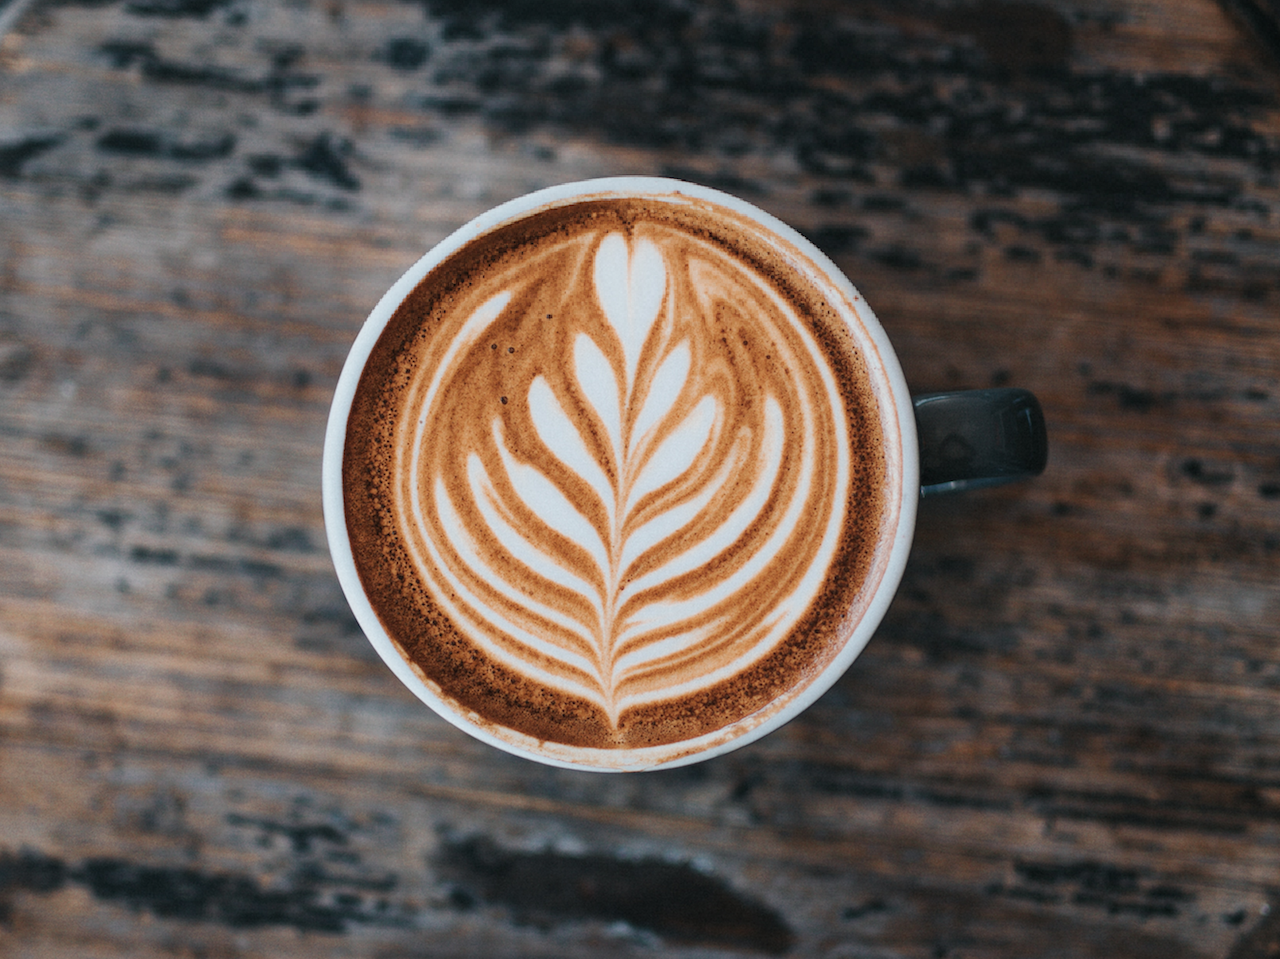 Latte art - beautliful coffee shops across Canada